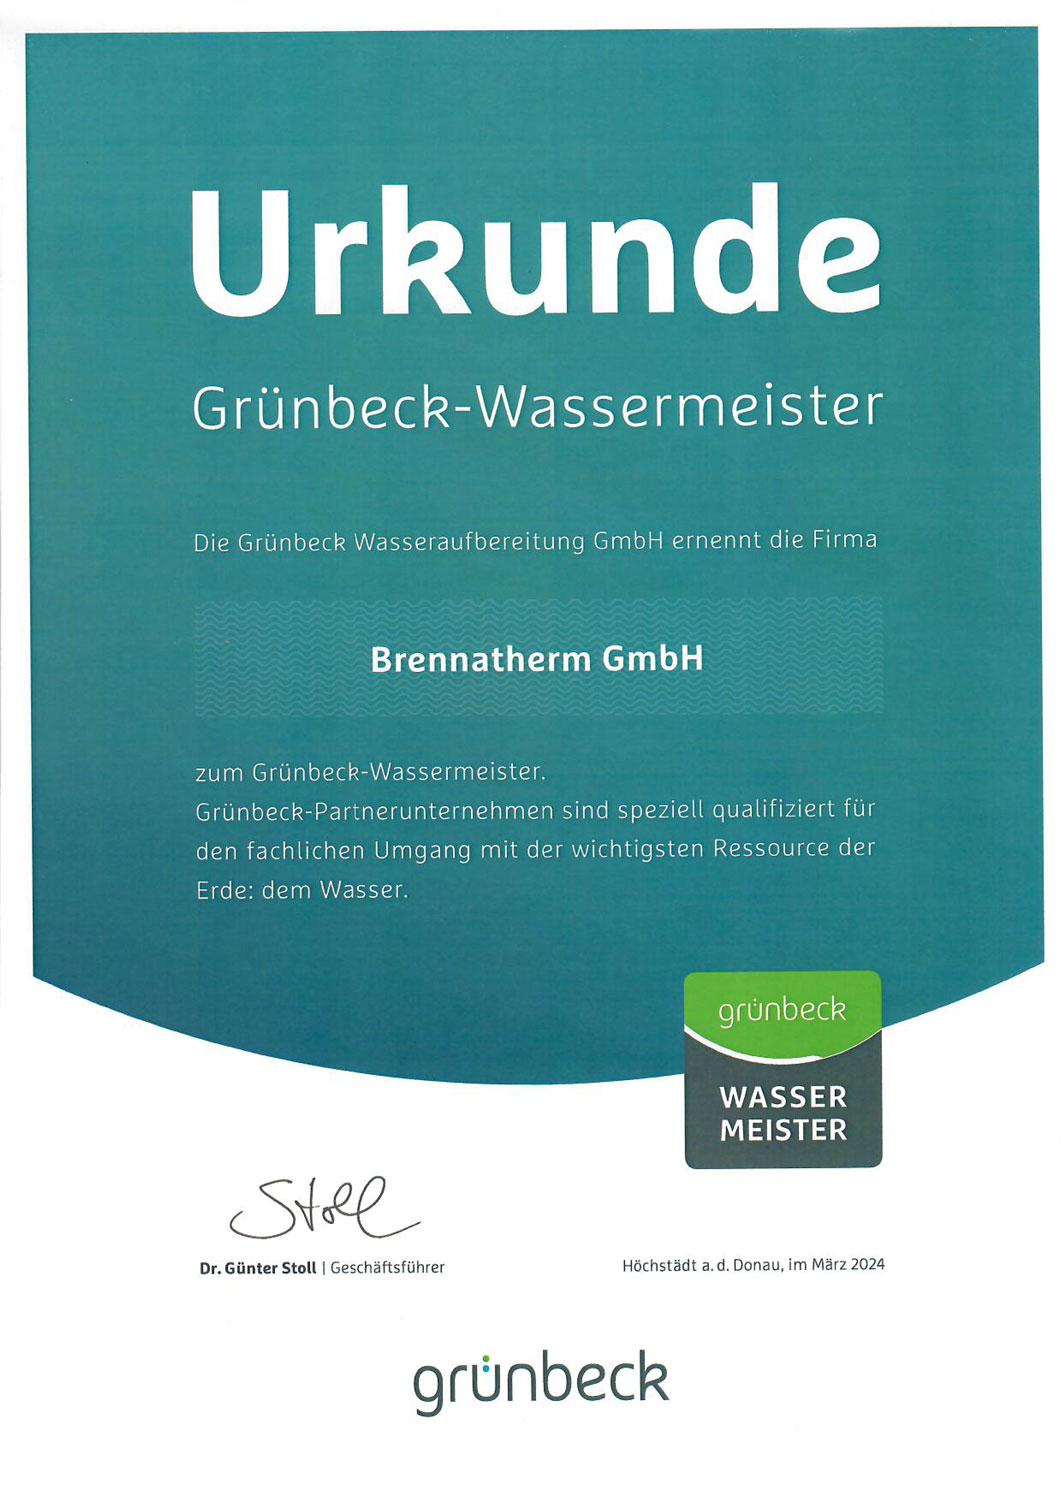 Wassermeister Brennatherm GmbH